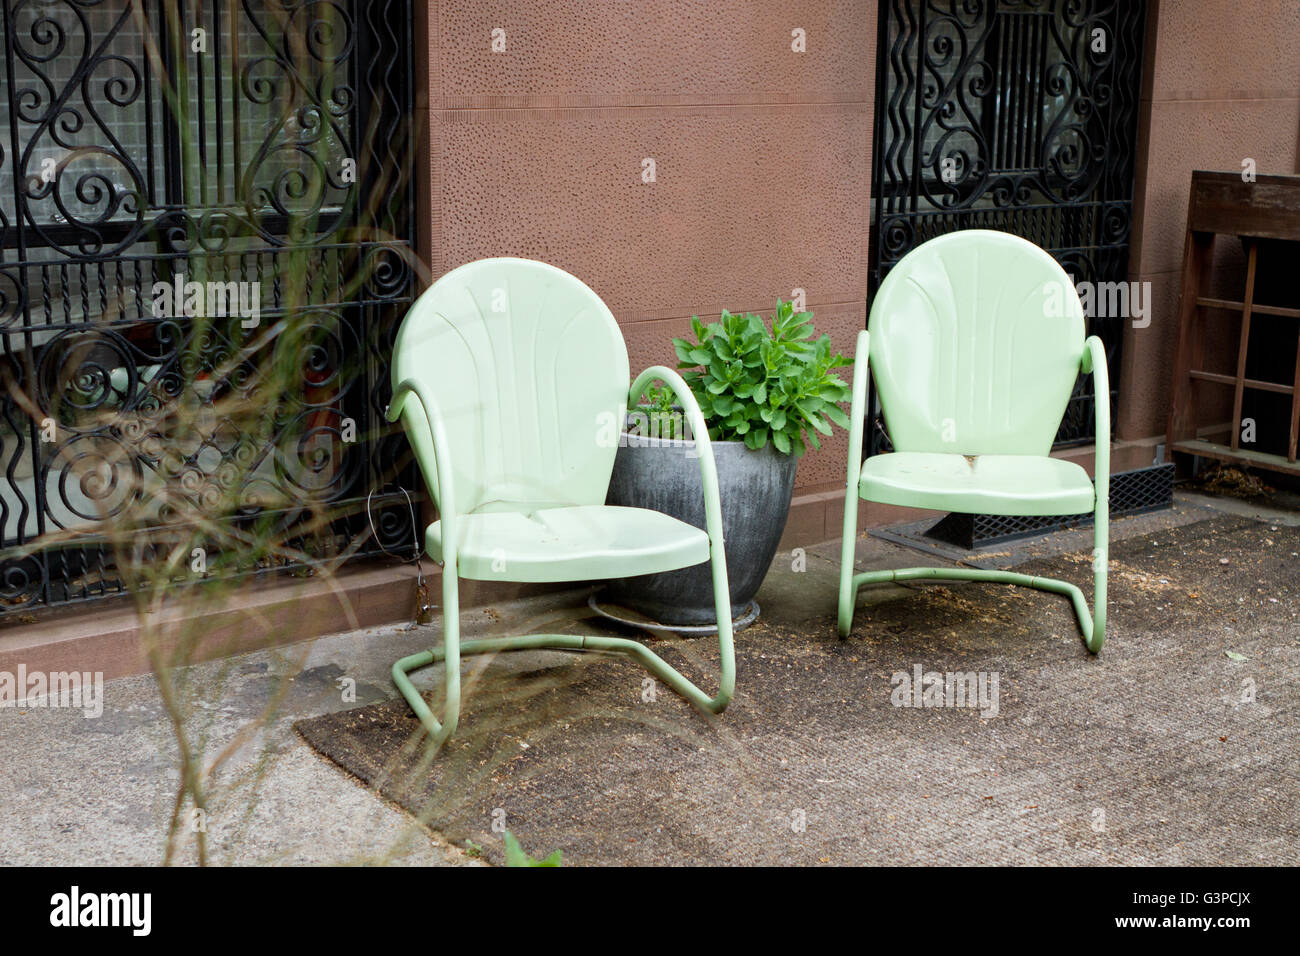 Patio urbano con dos sillas de jardín Foto de stock